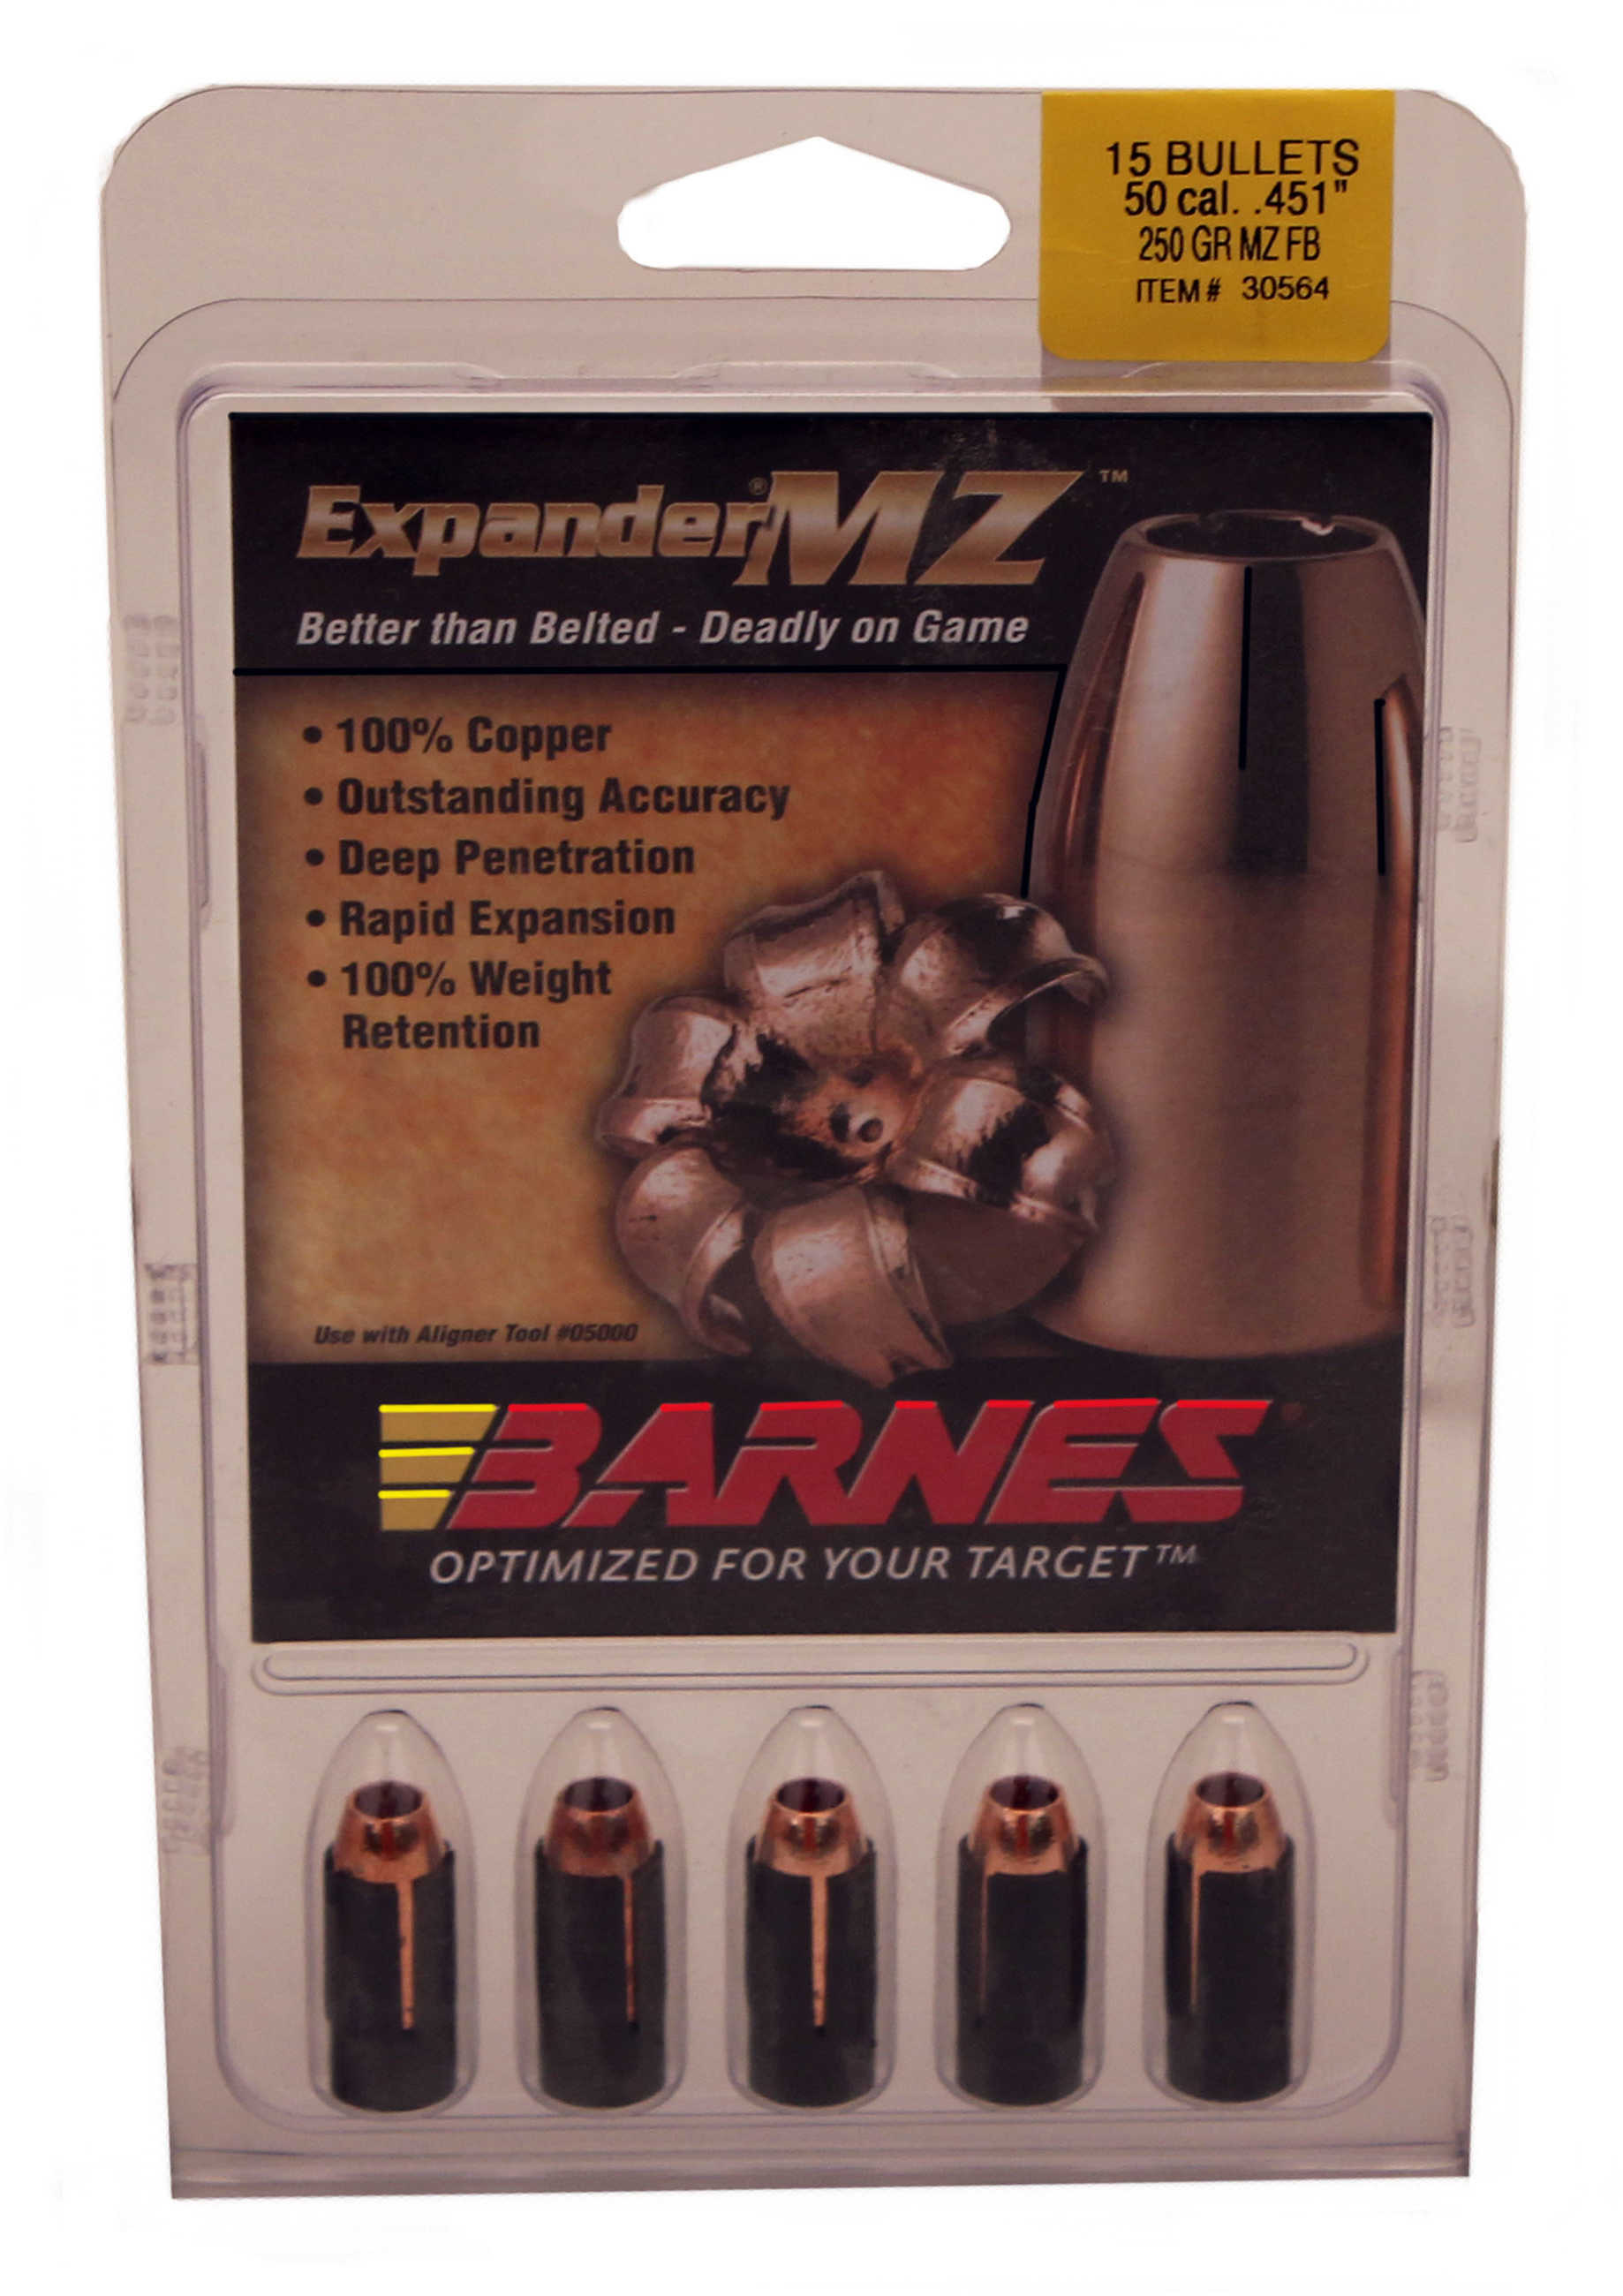 Barnes Bullets 50 Caliber 250 Grain Expander Muzzleloader (Per 15) 45126